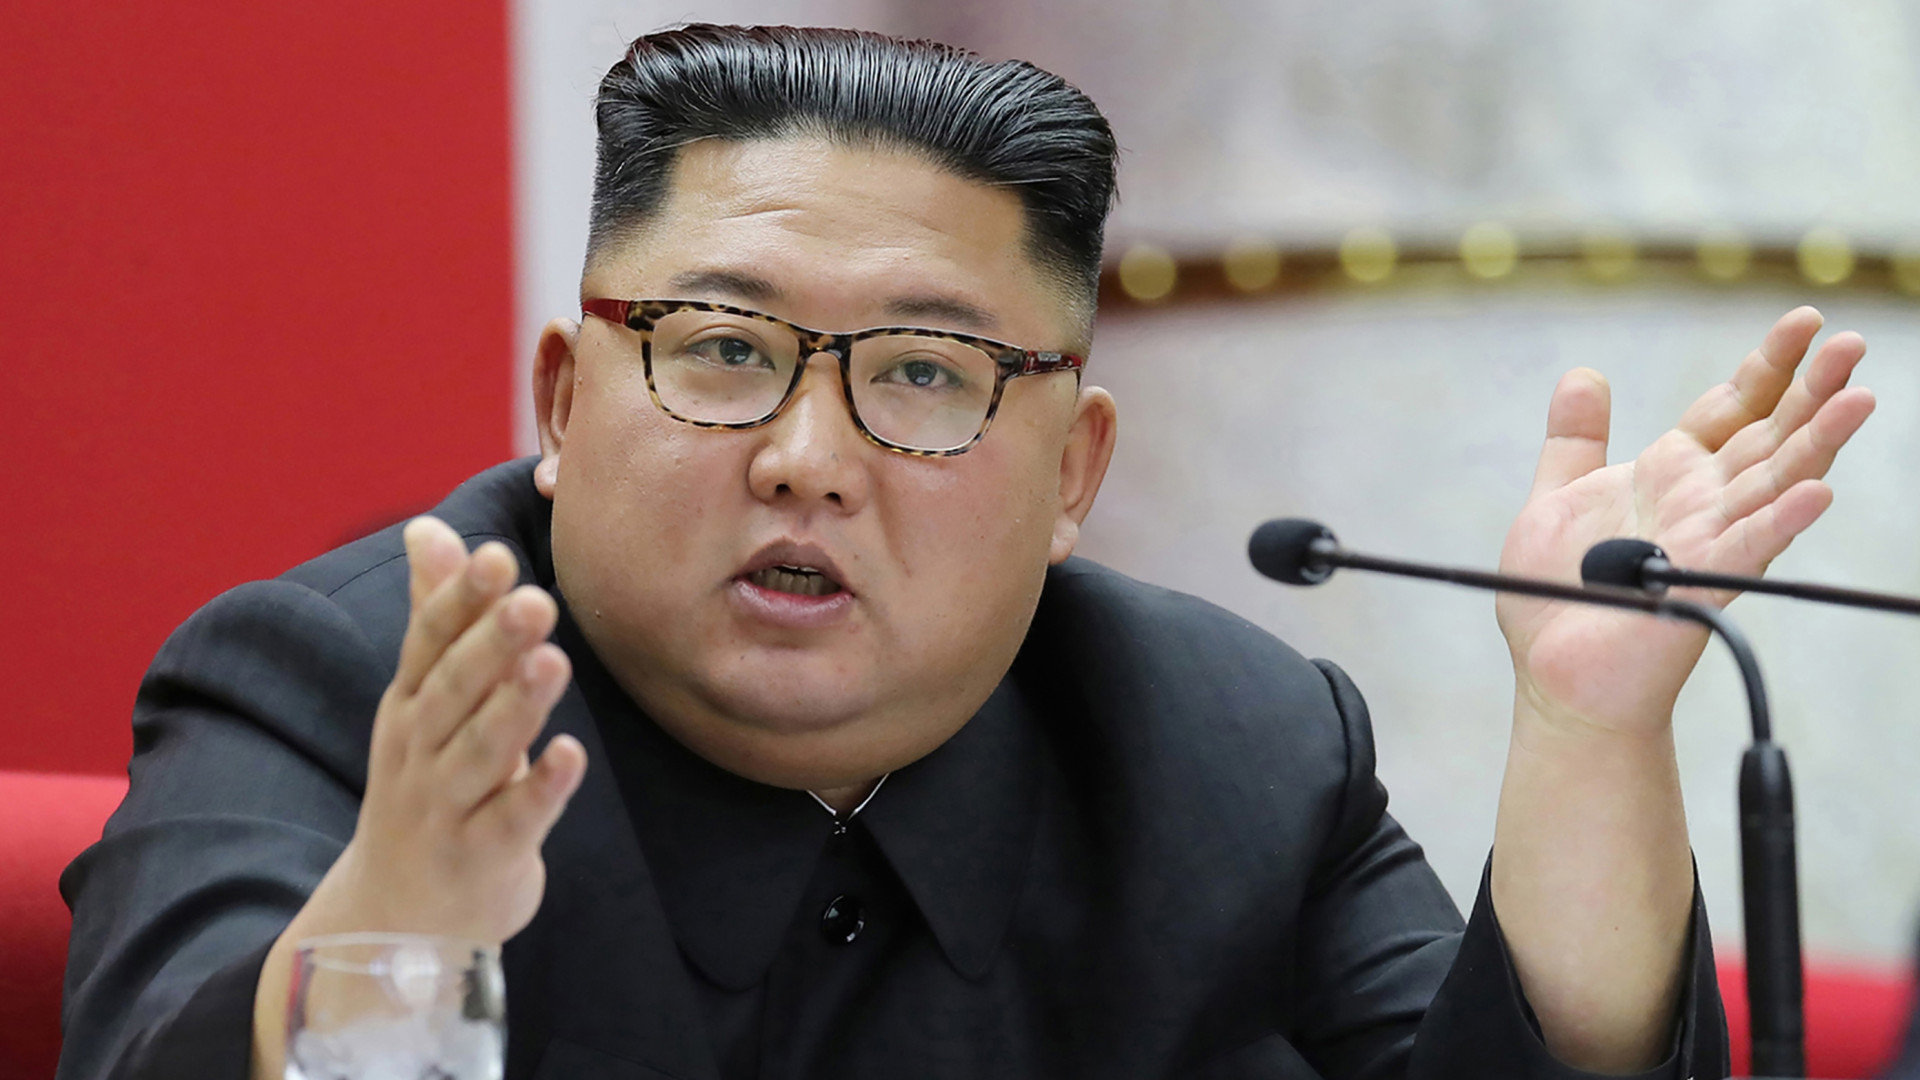 الزعيم الكوري الشمالي يدعو لـ"زيادة هائلة" في ترسانة بلاده النووية